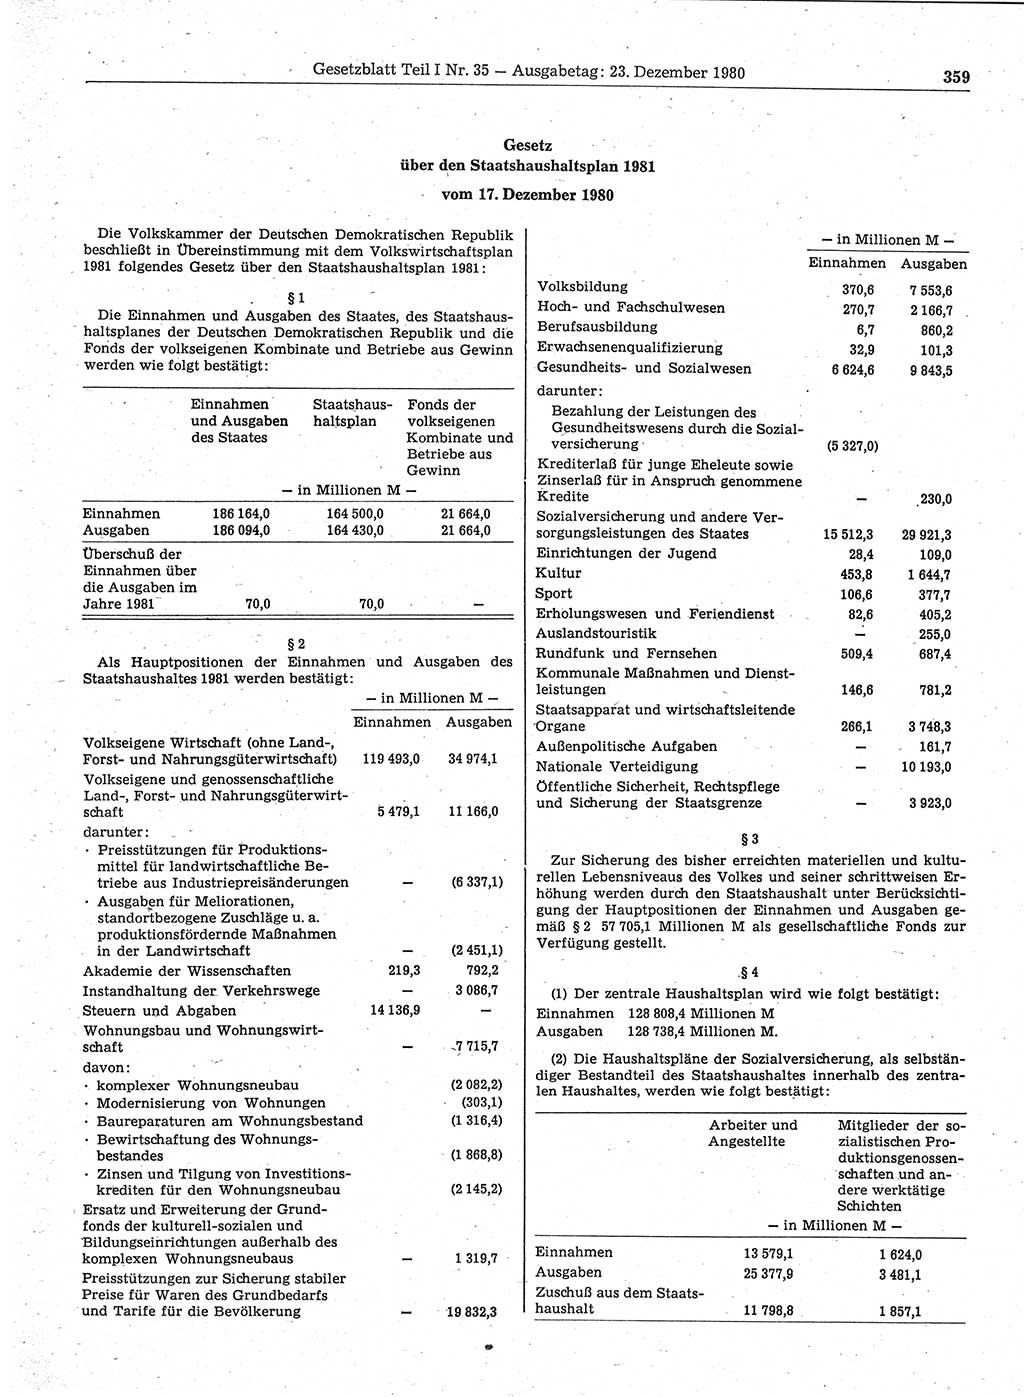 Gesetzblatt (GBl.) der Deutschen Demokratischen Republik (DDR) Teil Ⅰ 1980, Seite 359 (GBl. DDR Ⅰ 1980, S. 359)